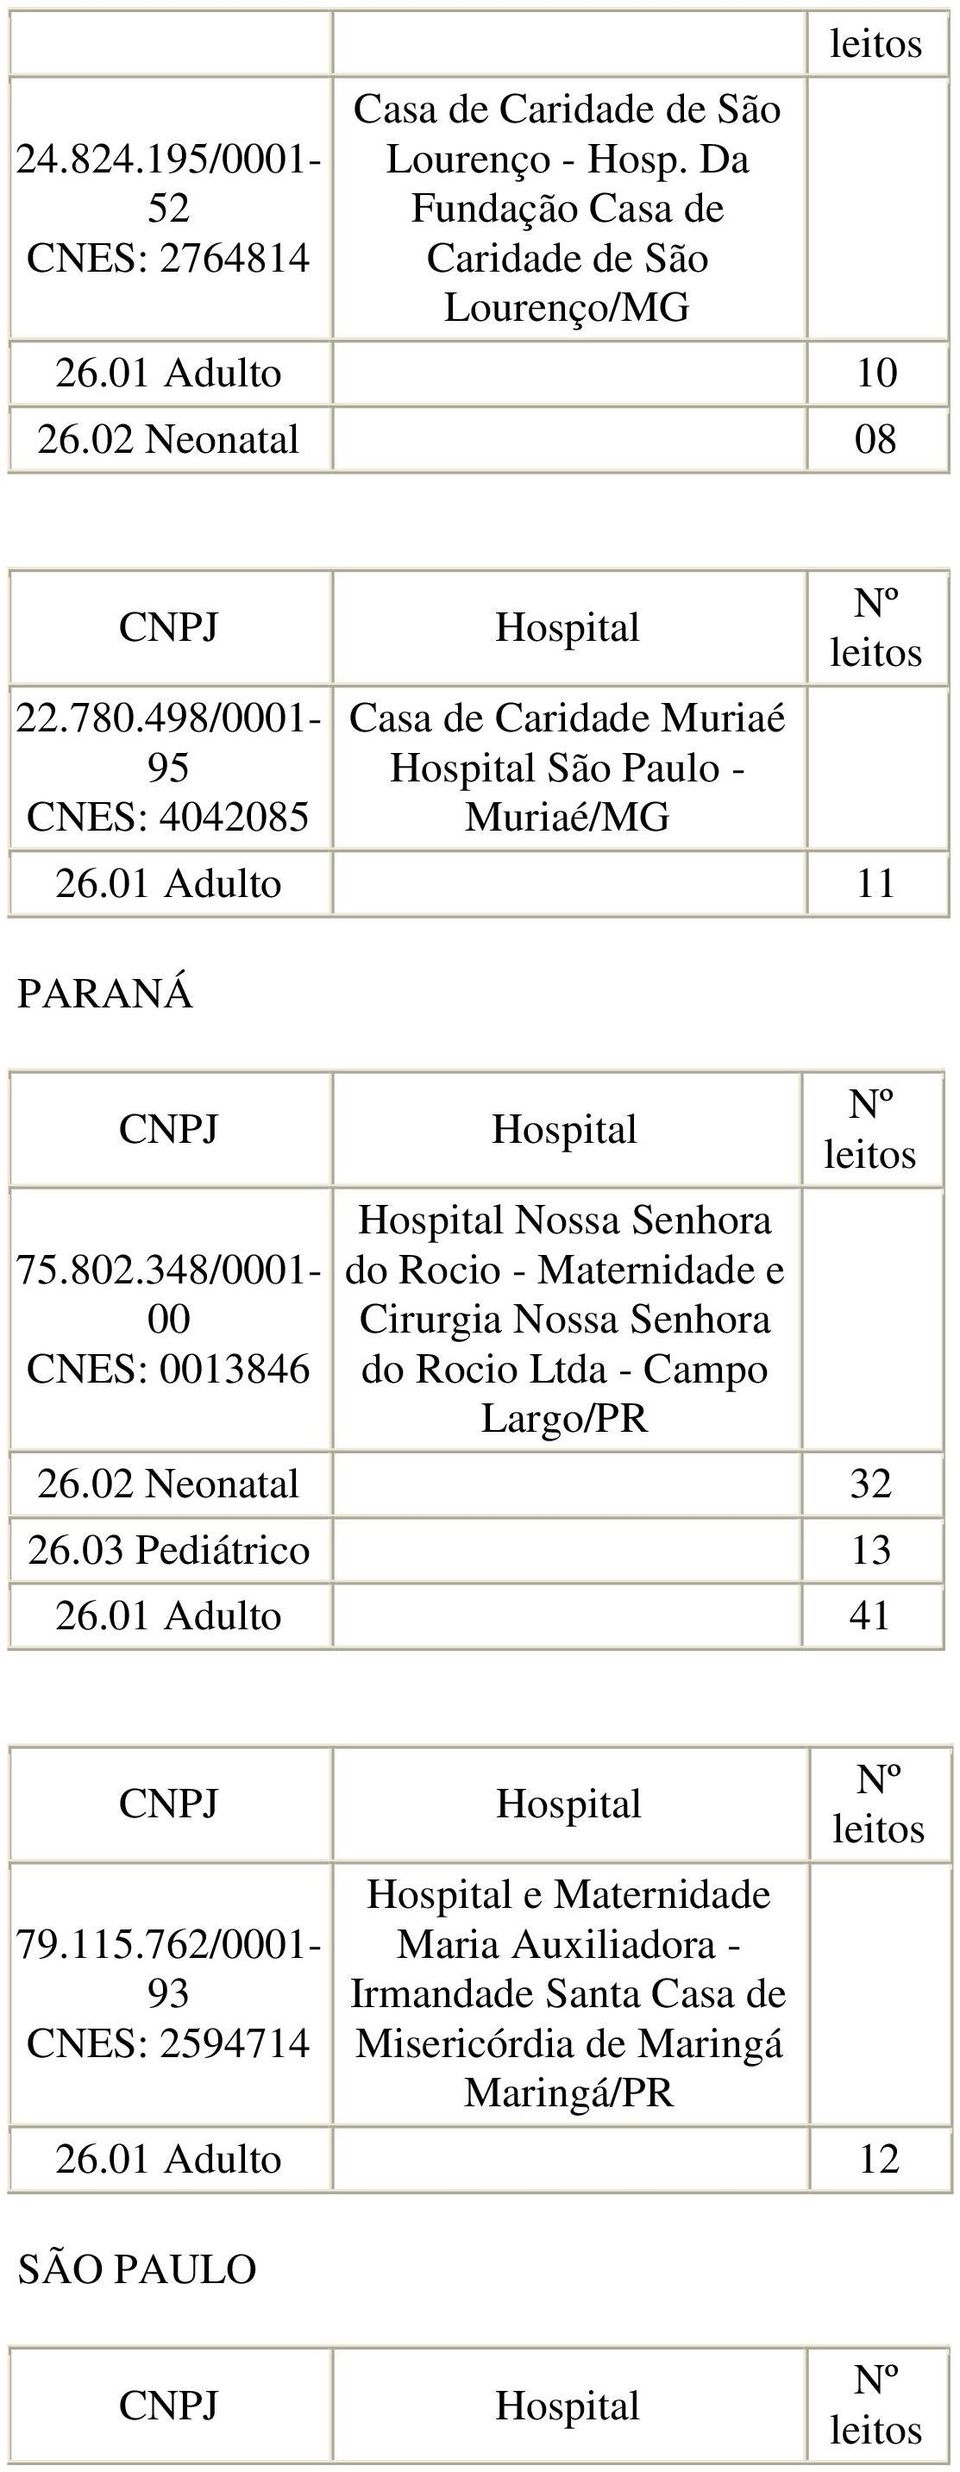 348/0001-00 CNES: 0013846 Nossa Senhora do Rocio - Maternidade e Cirurgia Nossa Senhora do Rocio Ltda - Campo Largo/PR 26.02 Neonatal 32 26.